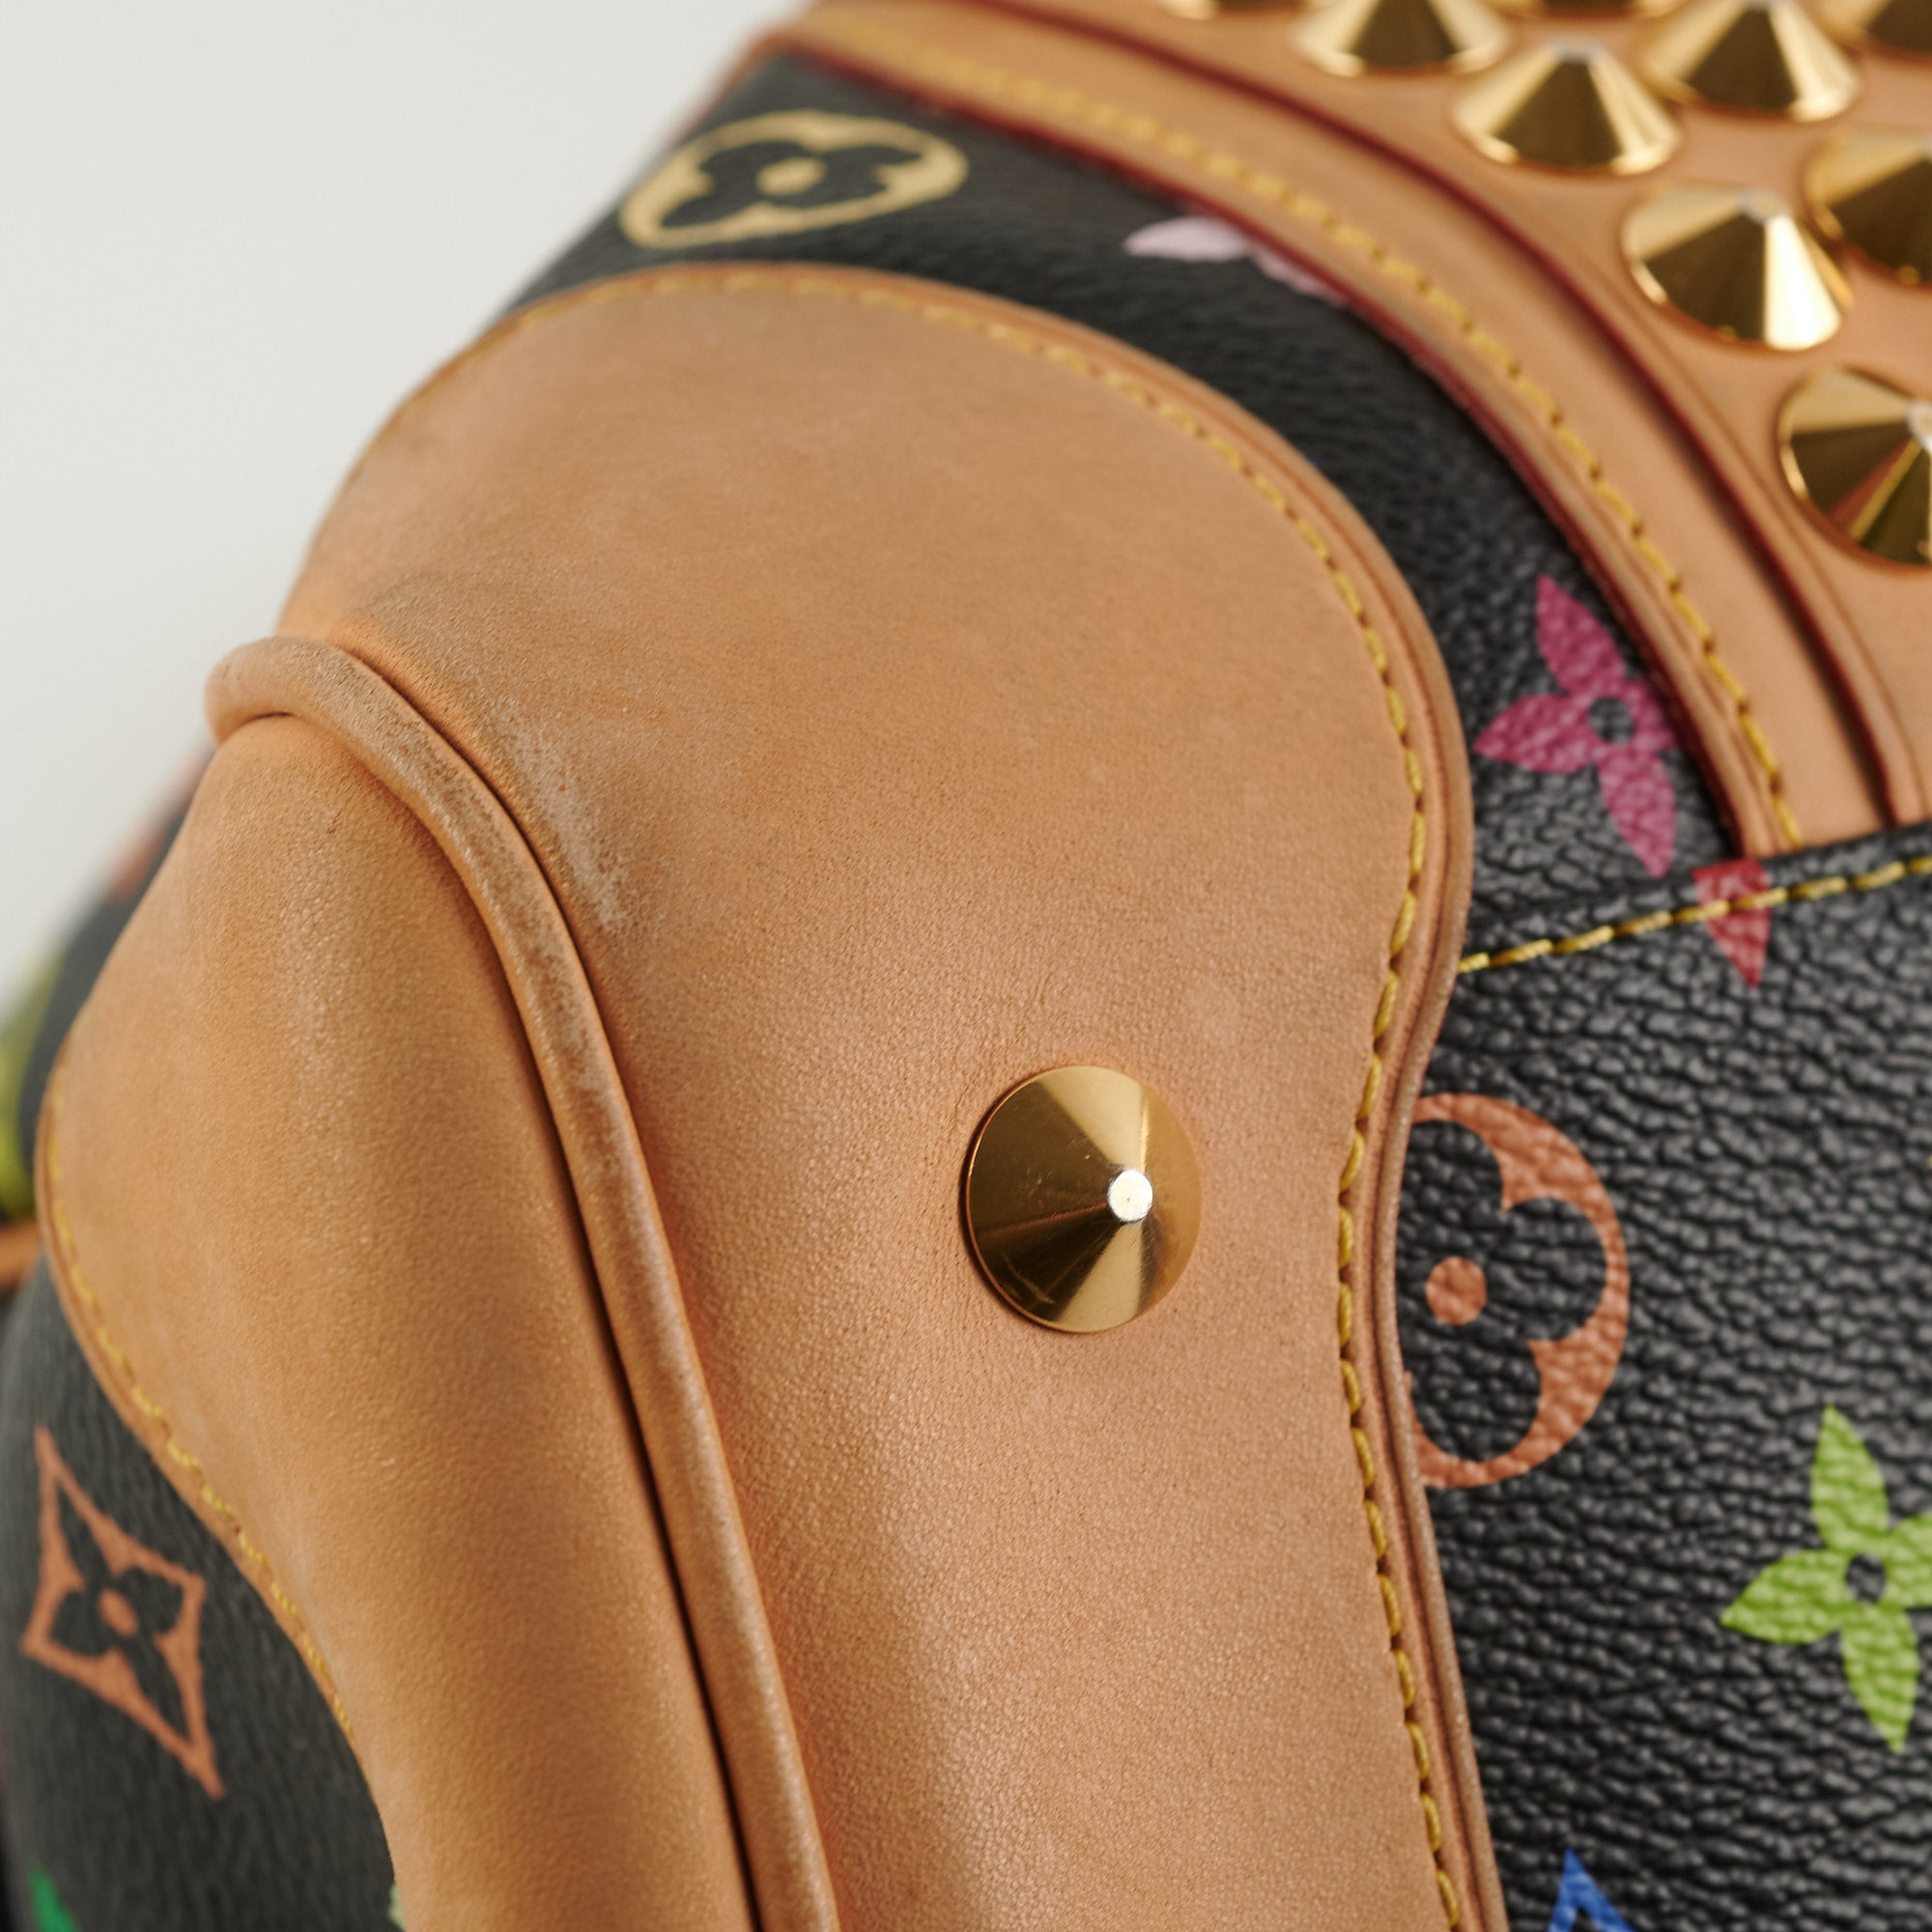 Louis Vuitton Courtney Mm Shoulder Bag 22% off retail